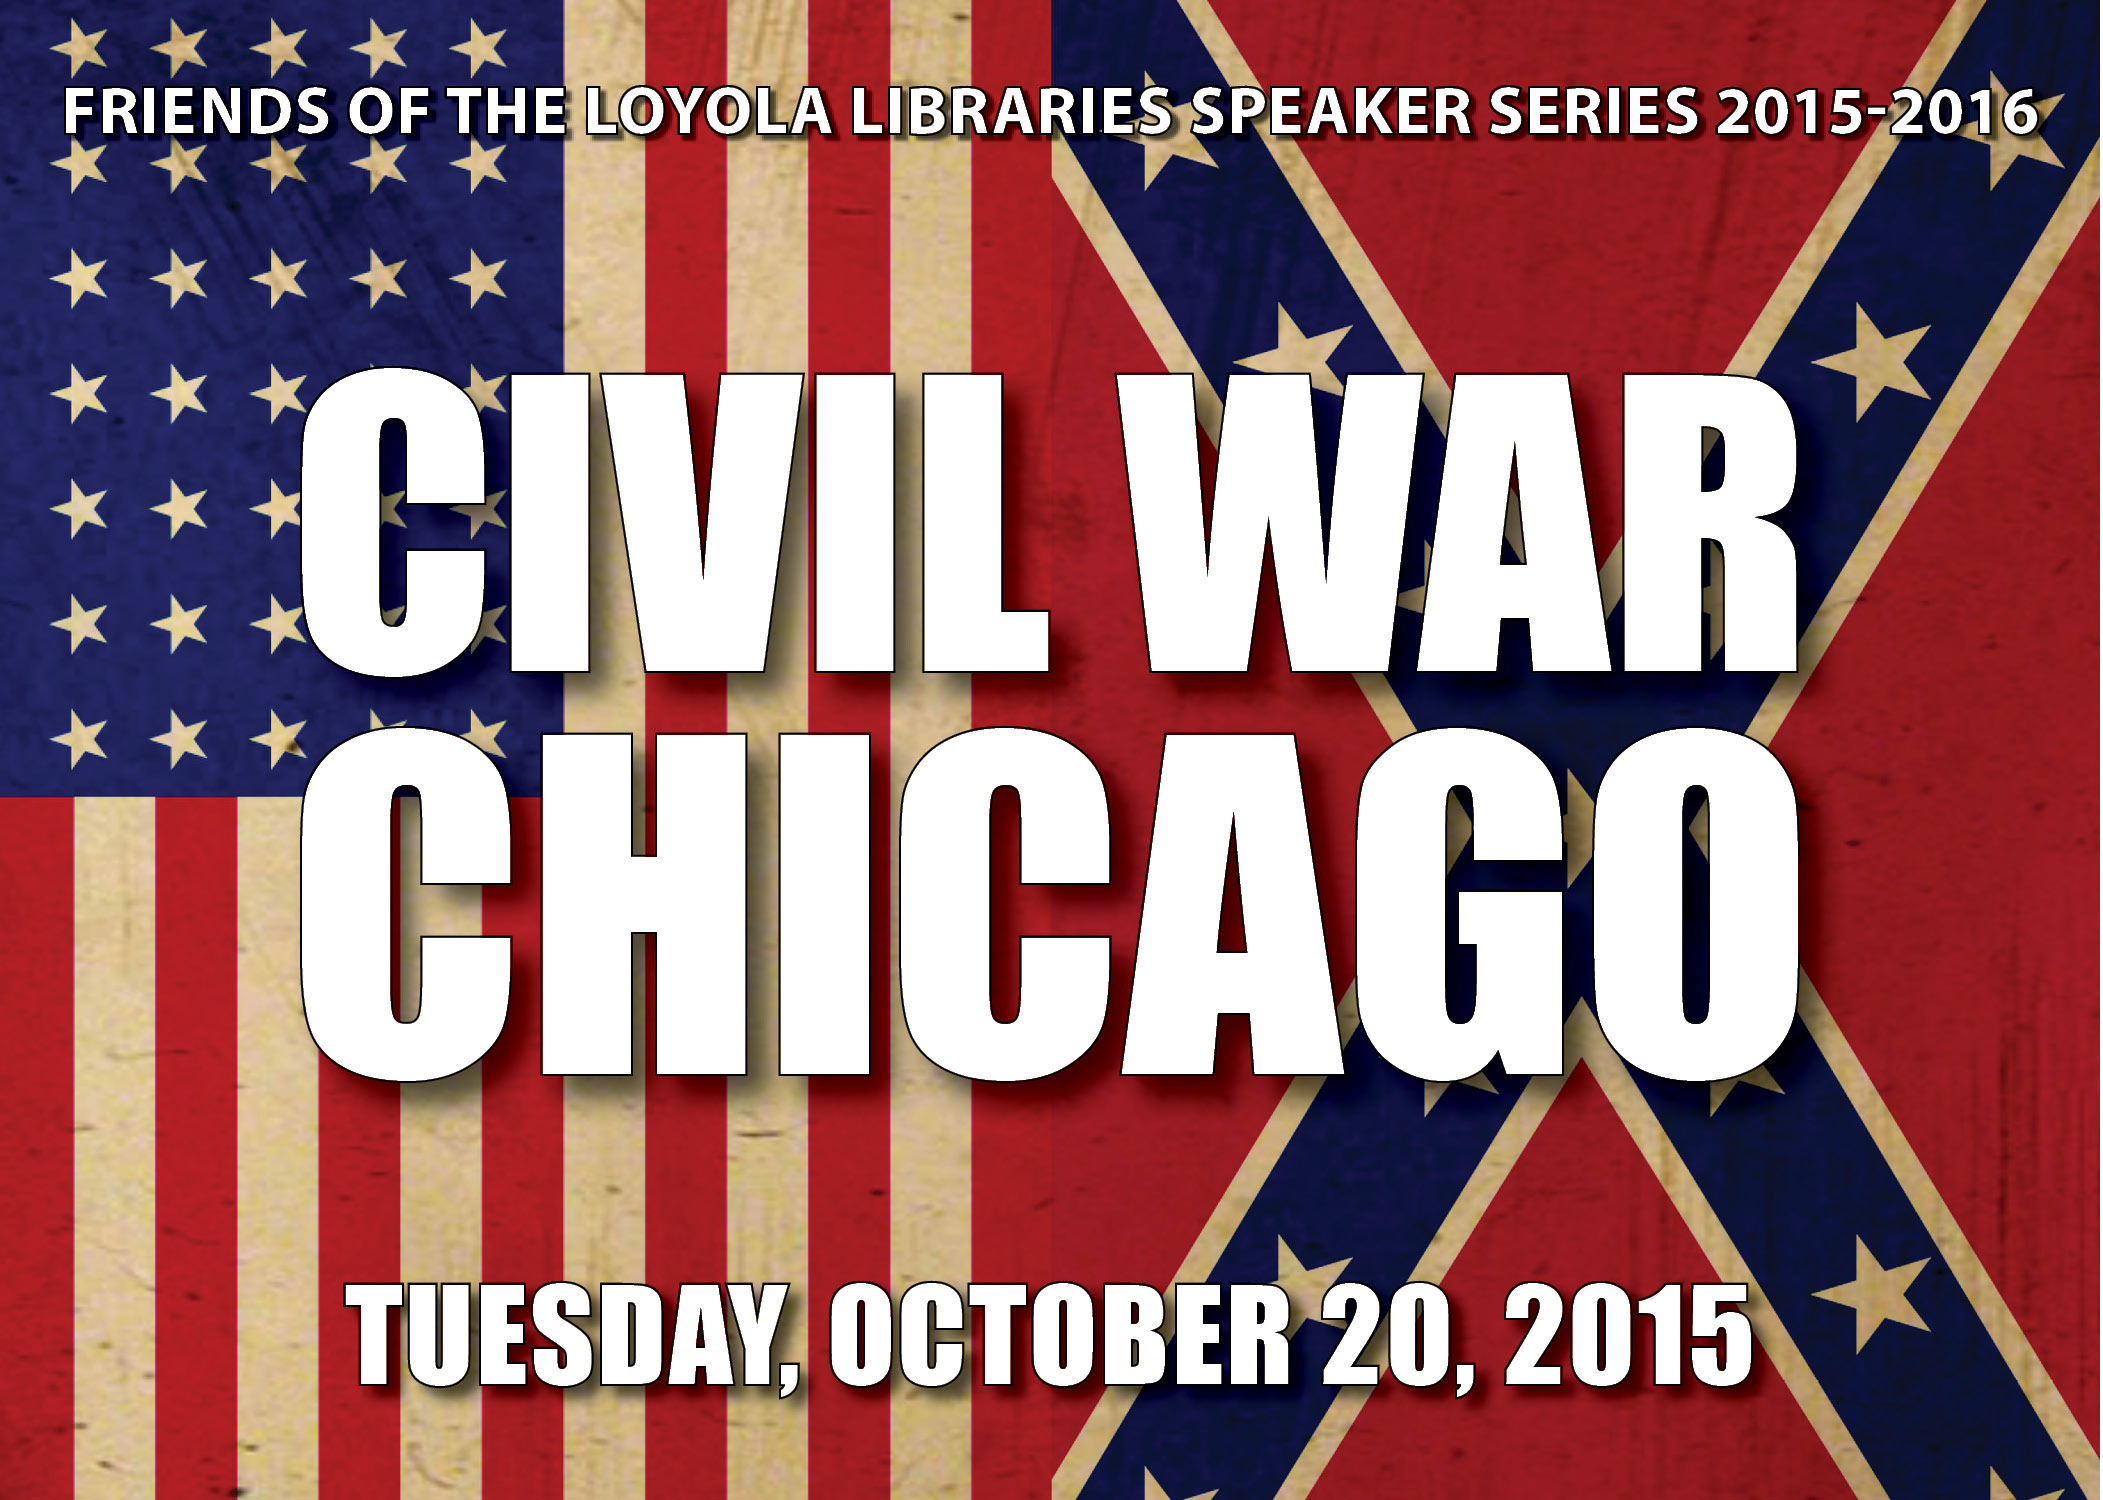 Speaker Series: Civil War Chicago